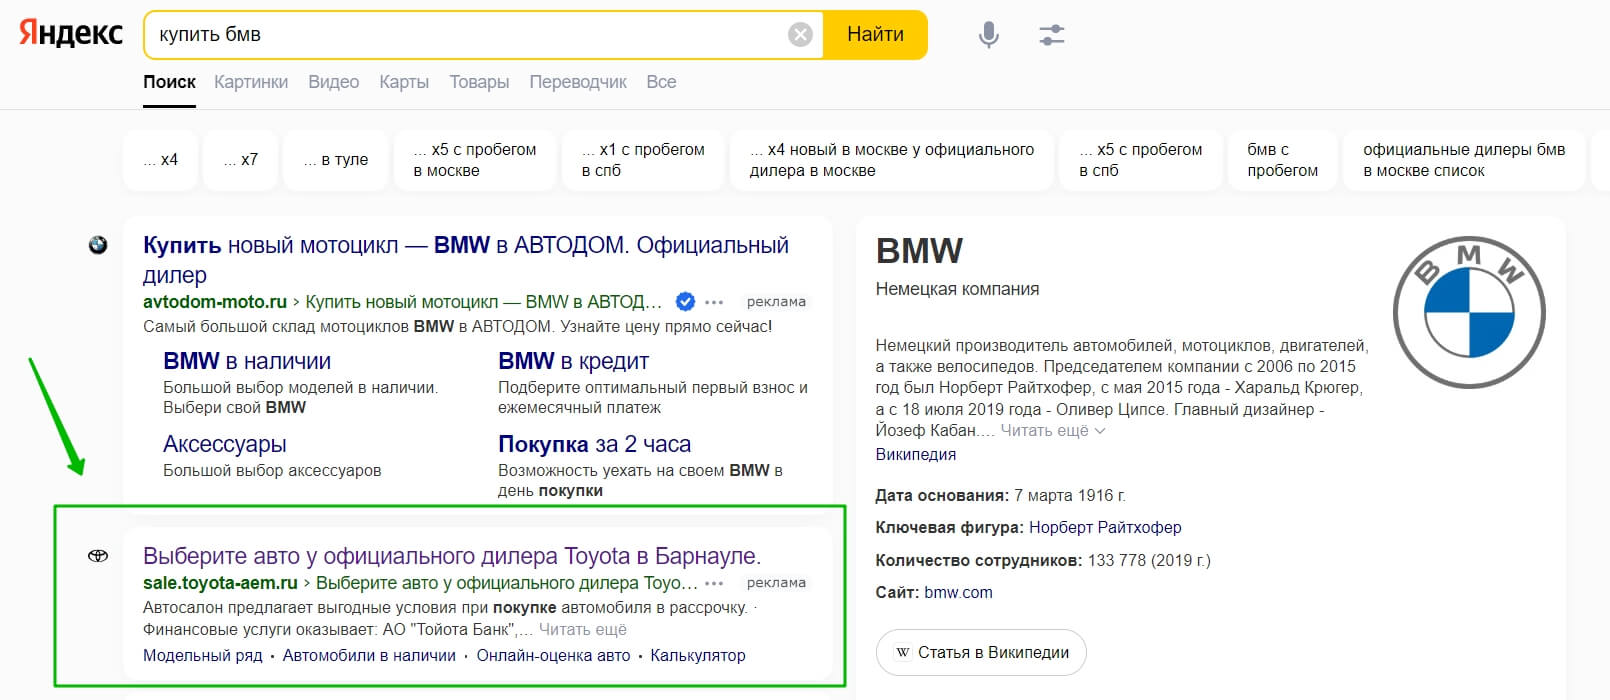 Реклама Тойоты по запросу "купить БМВ"